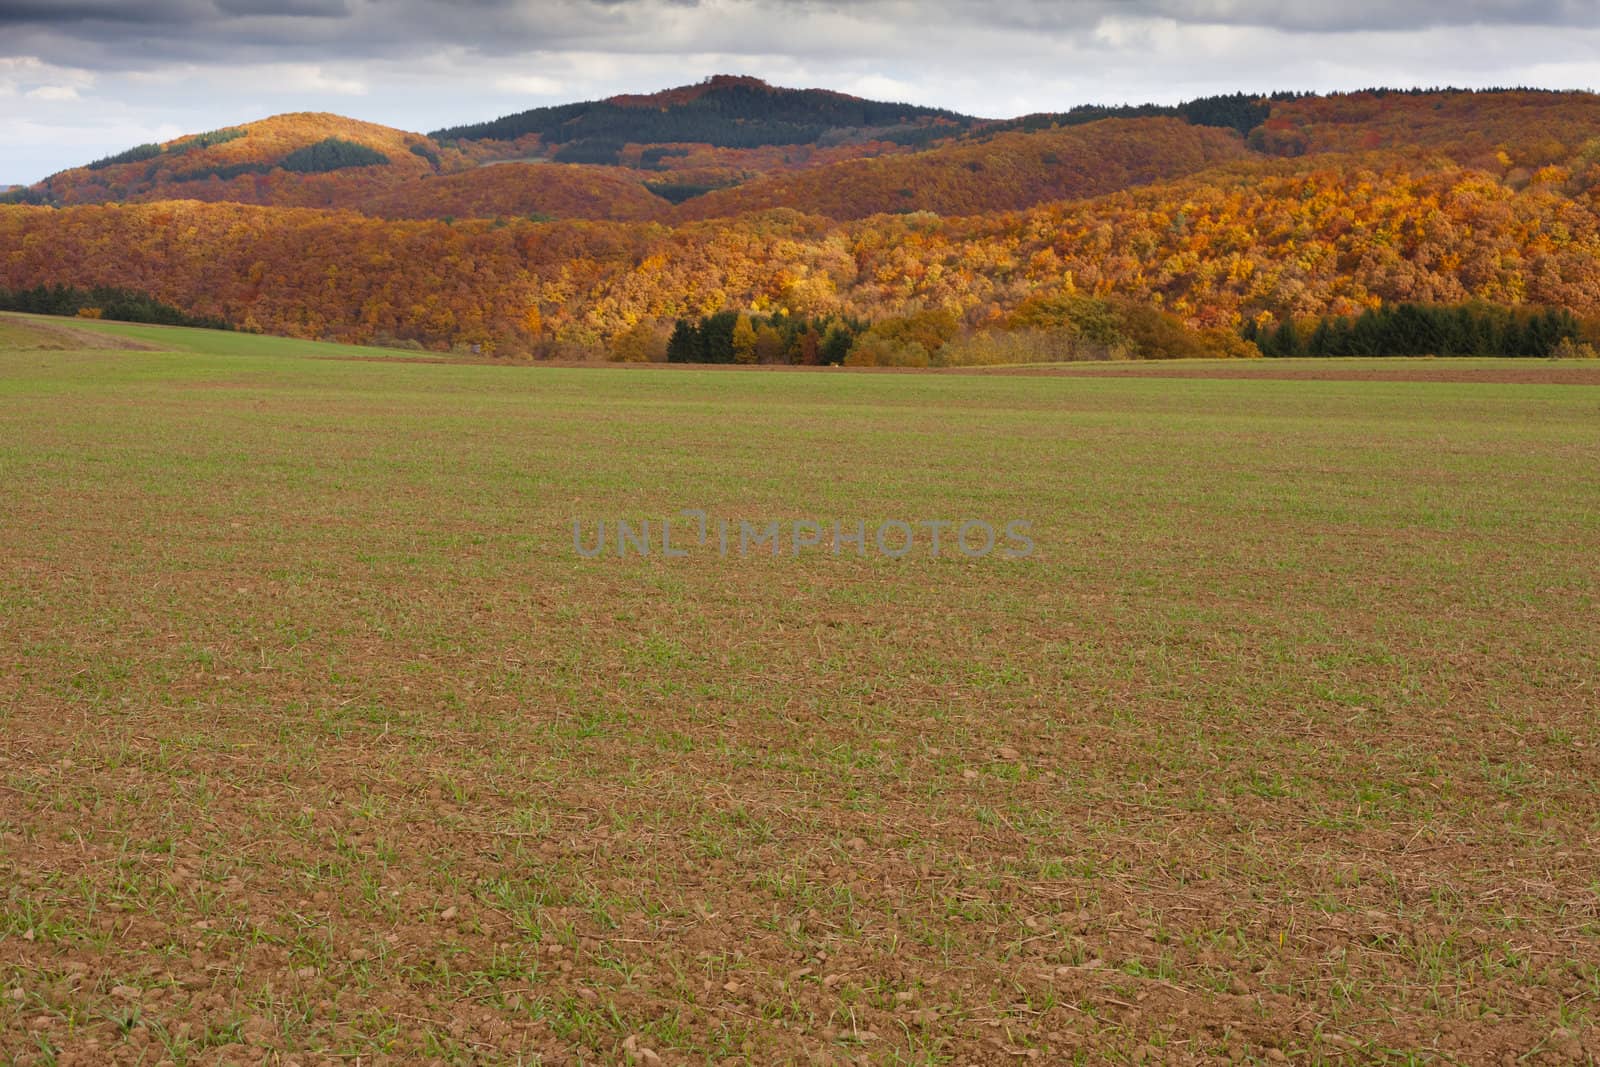 Winter grain on field in fall by PiLens